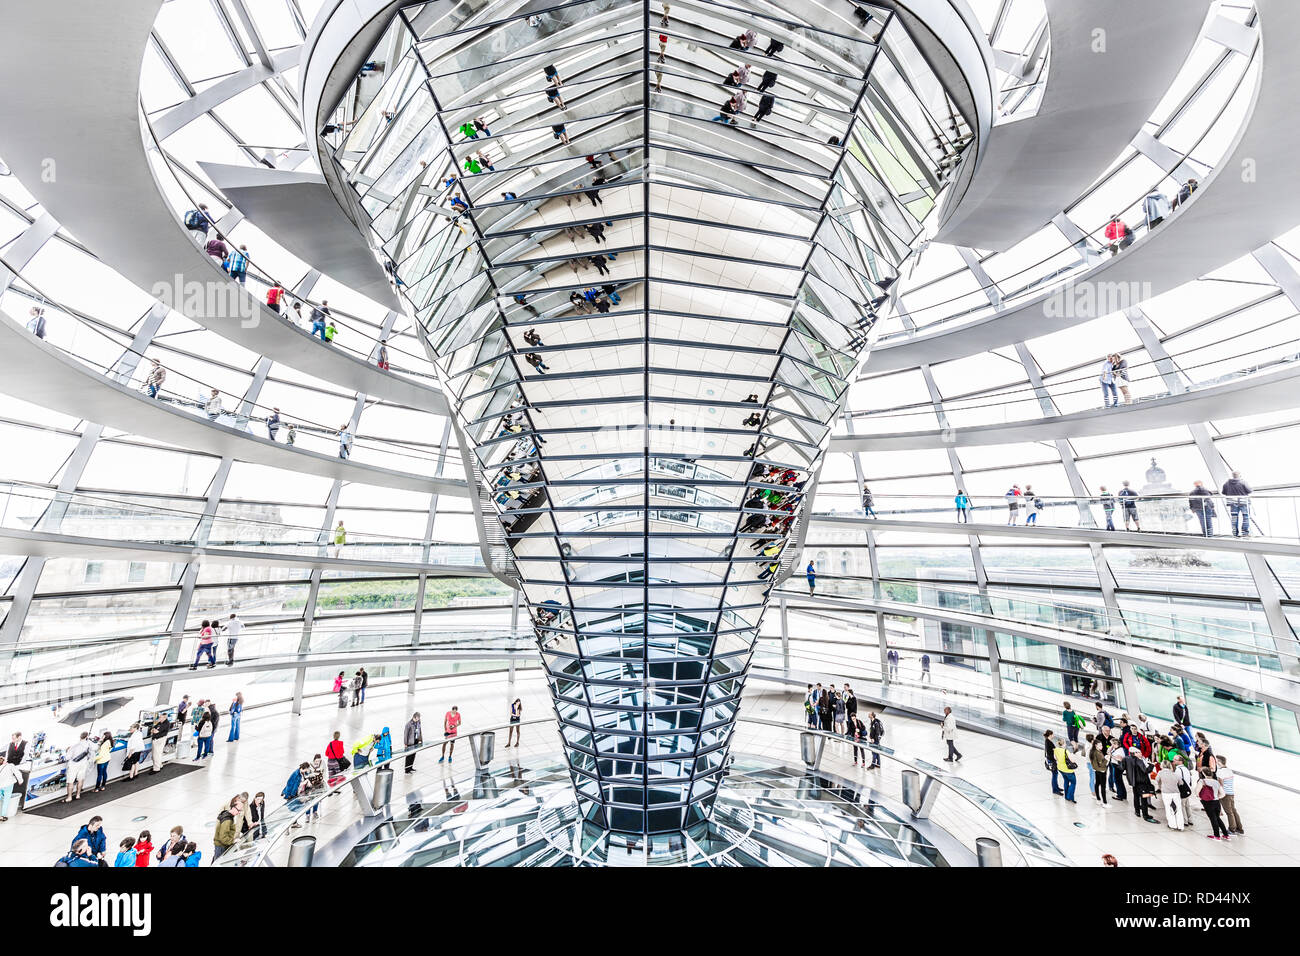 BERLIN - Juli 19, 2015: Innenansicht der Reichstag Kuppel in Berlin, Deutschland. Konstruiert und der Wiedervereinigung Deutschlands ist es jetzt einer zu symbolisieren Stockfoto